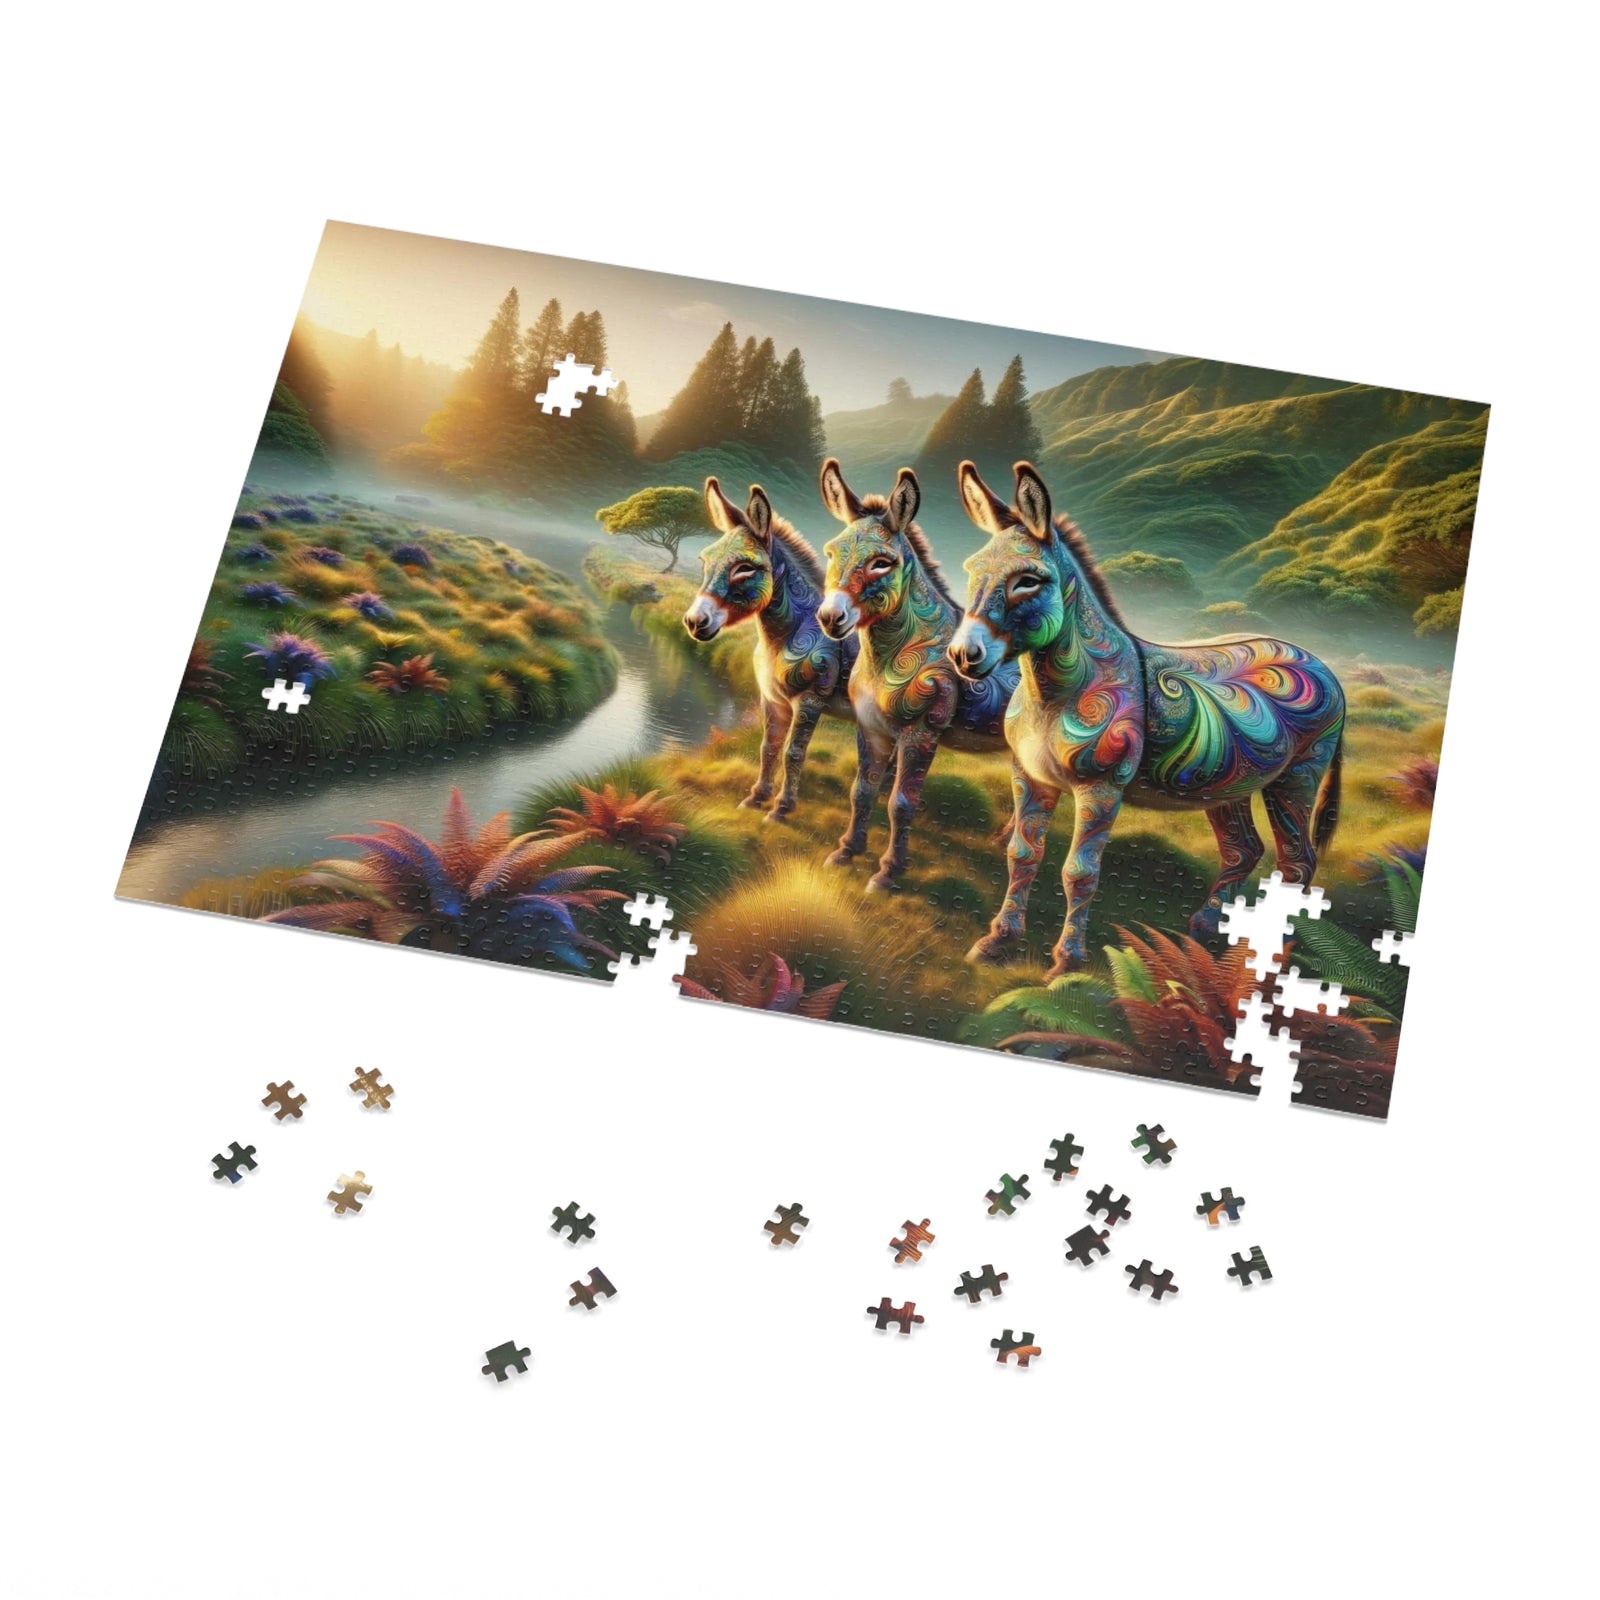 The Enchanted Donkeys Jigsaw Puzzle